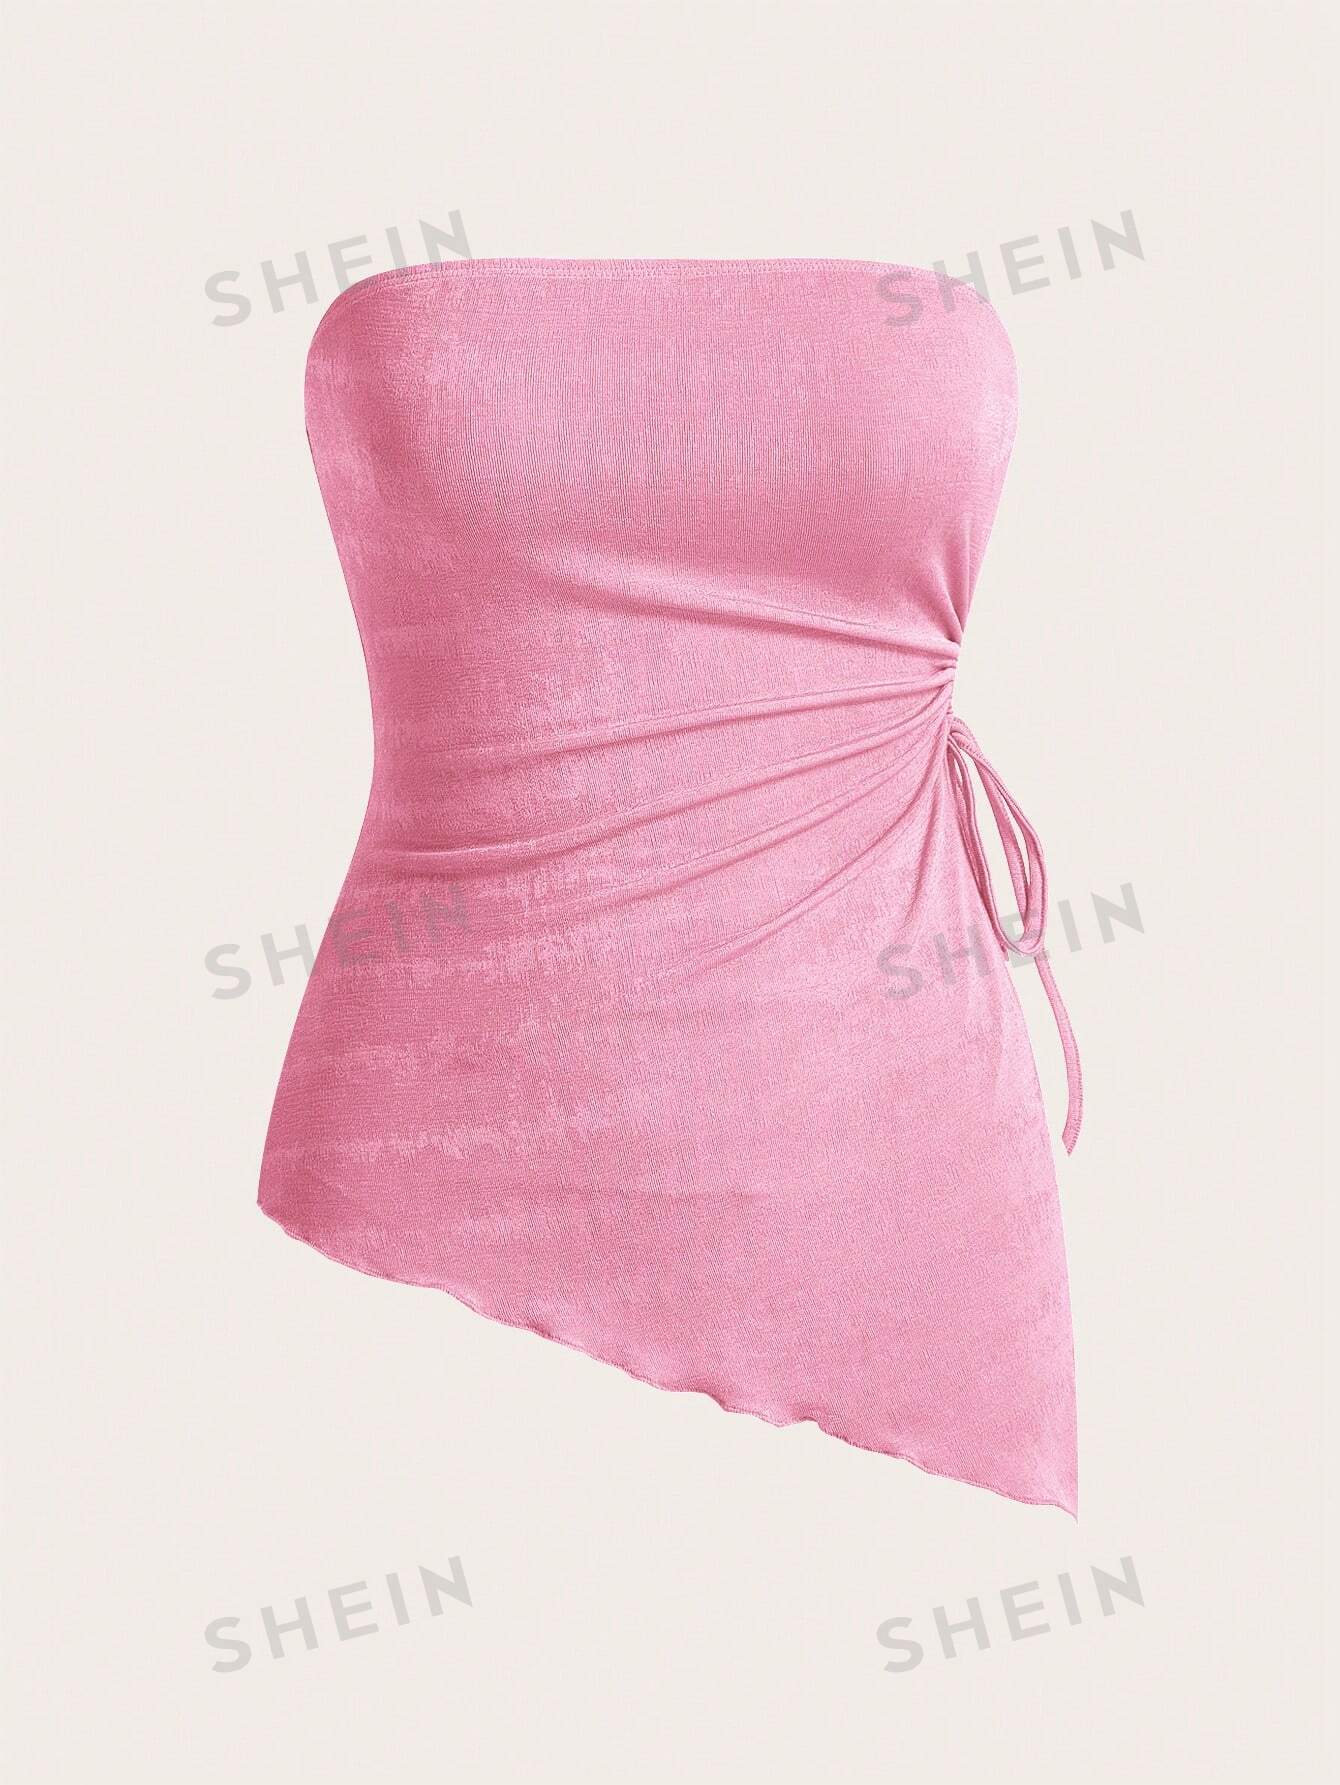 легкий трикотажный топ pieces кремового цвета со сборкой по краю SHEIN MOD Вязаный женский асимметричный топ-бандо с завязками по бокам и неровным подолом, розовый